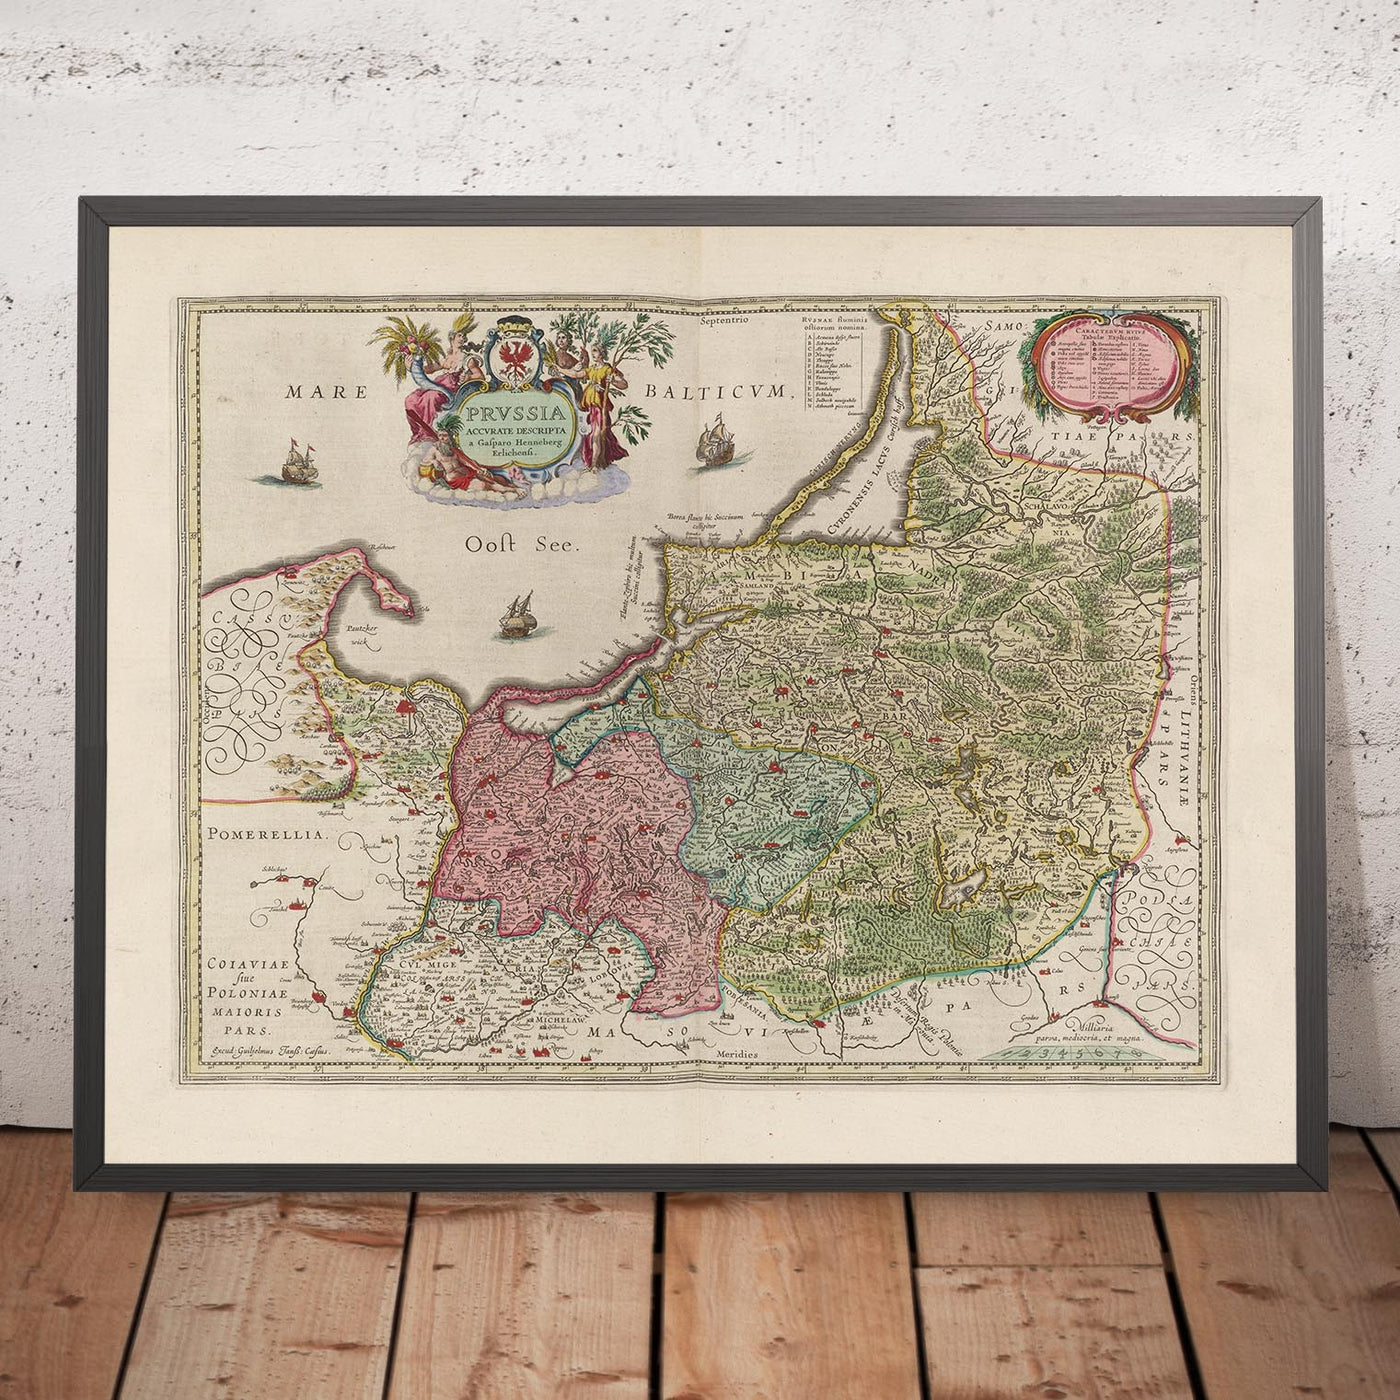 Alte Karte der Woiwodschaft Ermland-Masuren von Joan Blaeu, 1665: Olsztyn, Elbląg, Ełk, Ostroda und Giżycko, mit Masurischen Seen, Biskupiec und Łyna